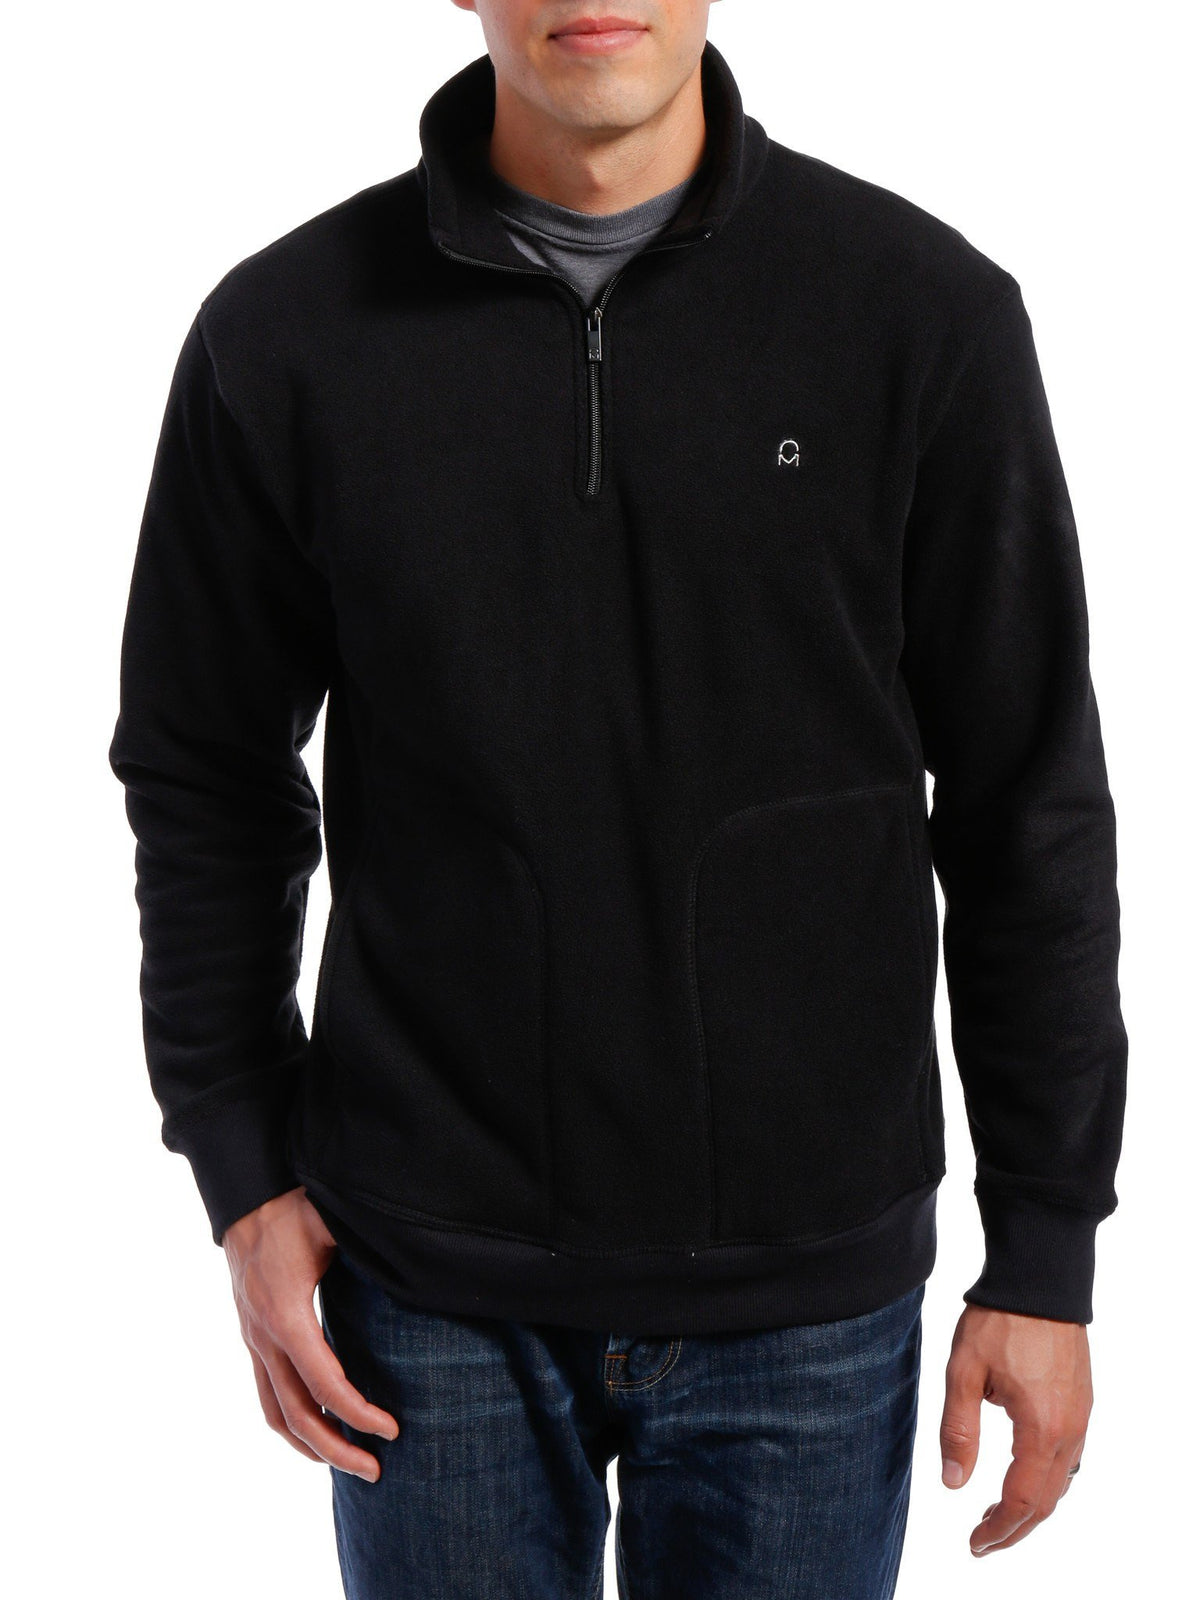 Men's Soft Fleece Half-Zip Pullover - Black